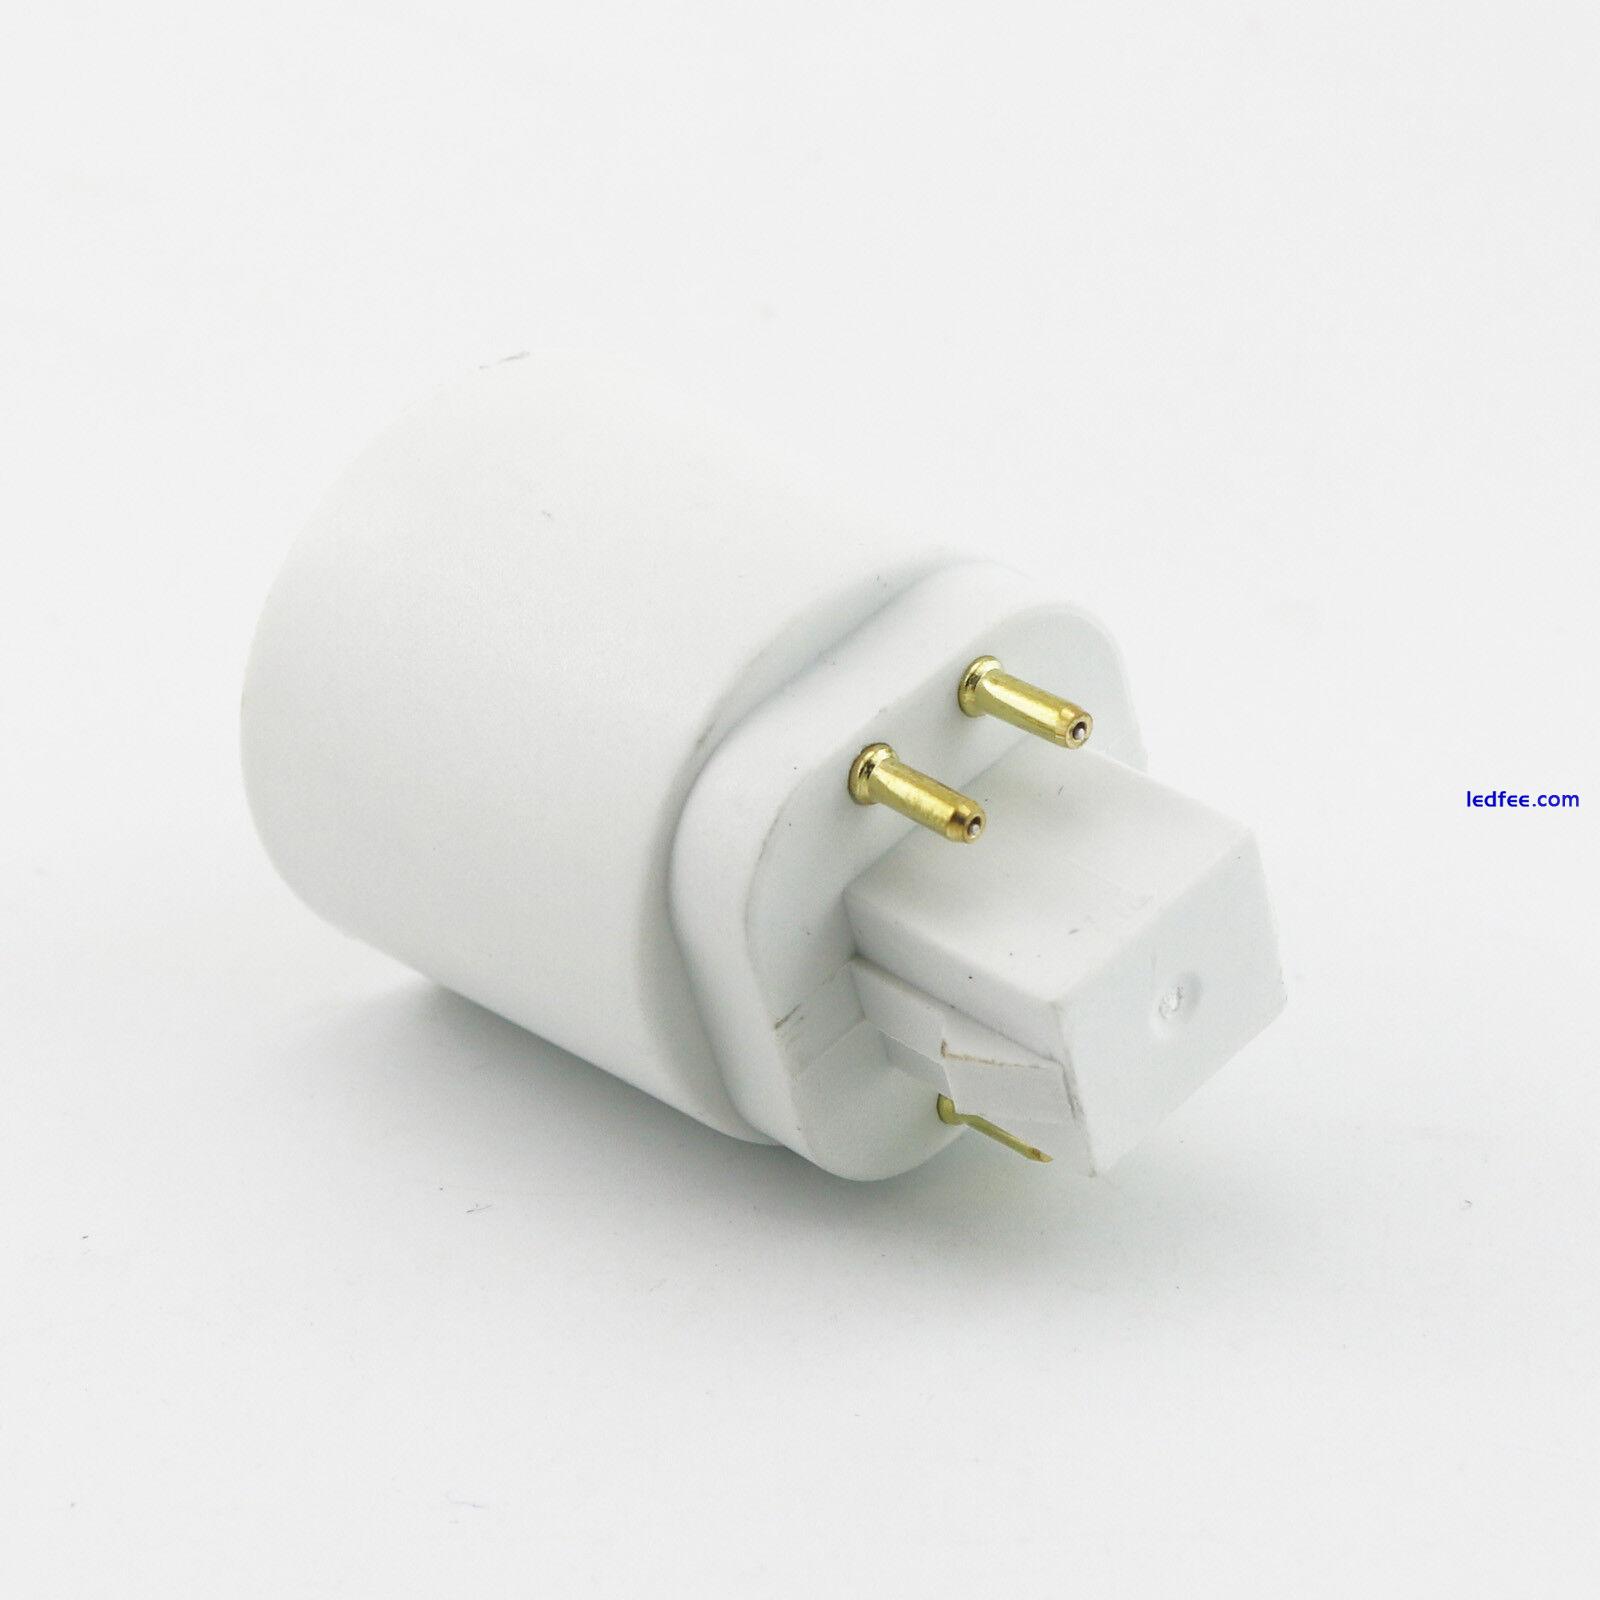 1x G24q 4 Pin 15mm To E26 E27 Screw LED Light Bulb Lamp Adapter Converter Holder 1 